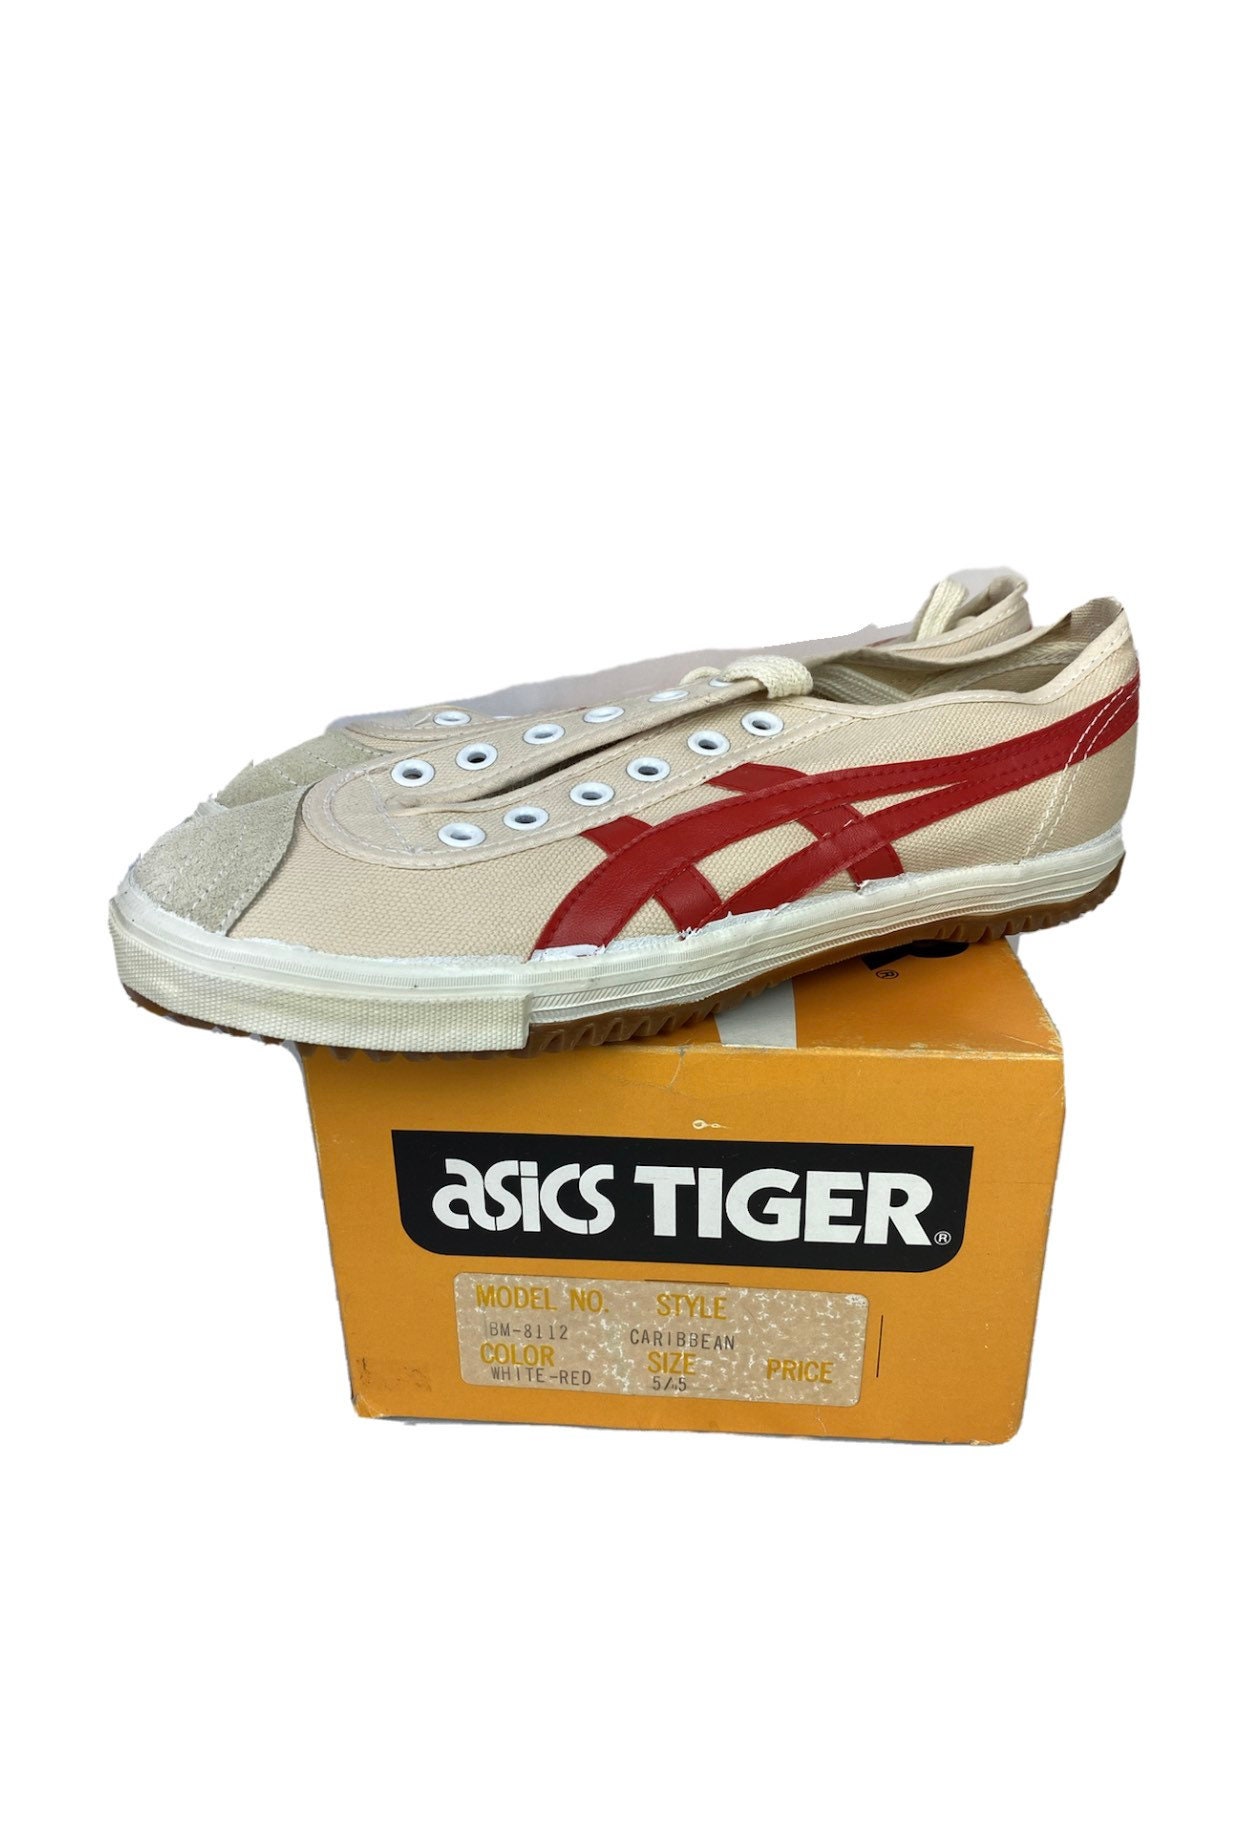 Zapatos Asics Tigre Tigresa Caribe Blanco/Rojo - Etsy